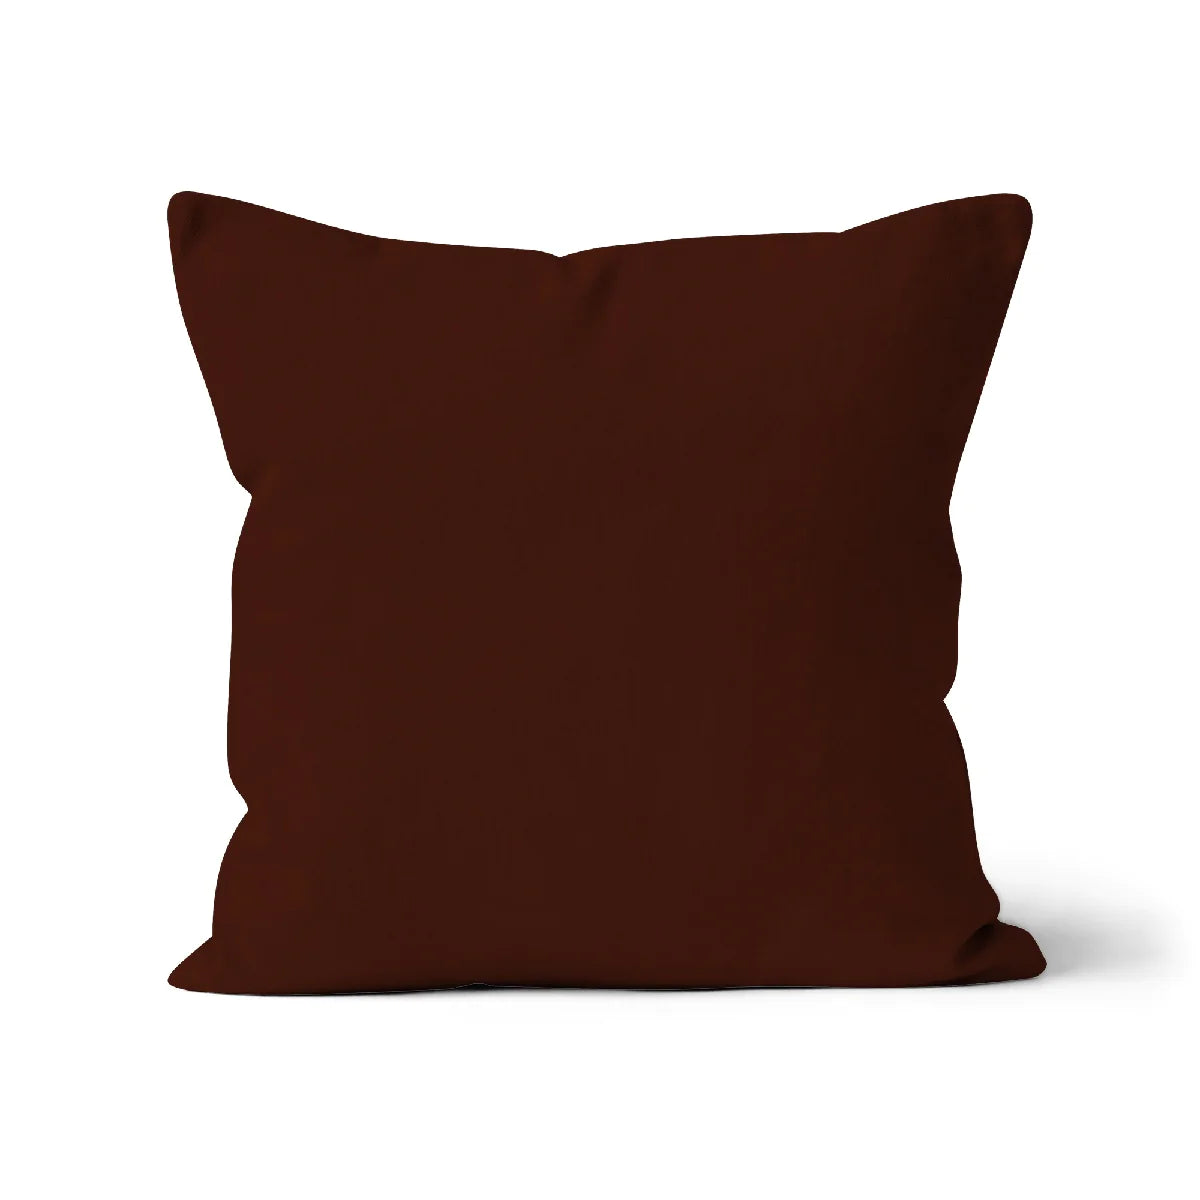 Espresso Brown Organic Cotton Cushion Cover